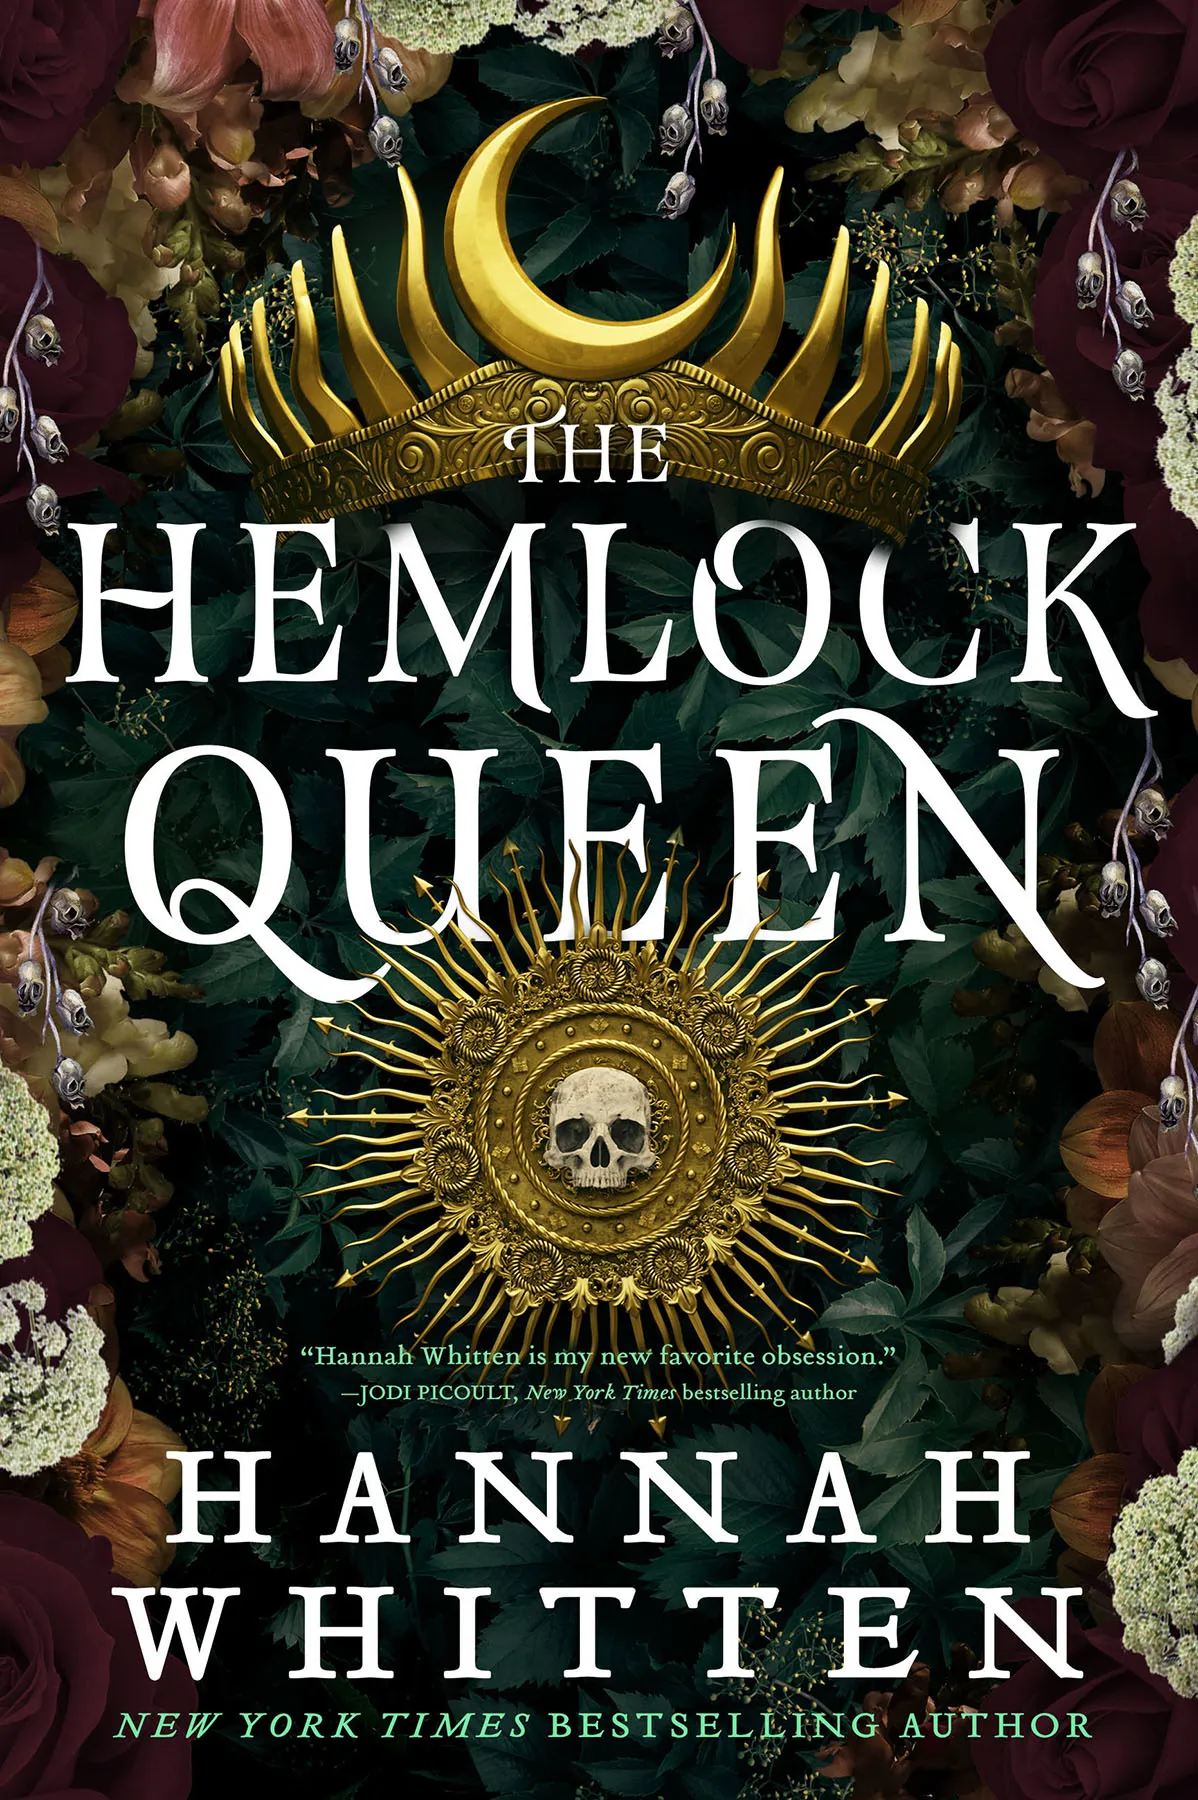 The Hemlock Queen (The Nightshade Crown #2)